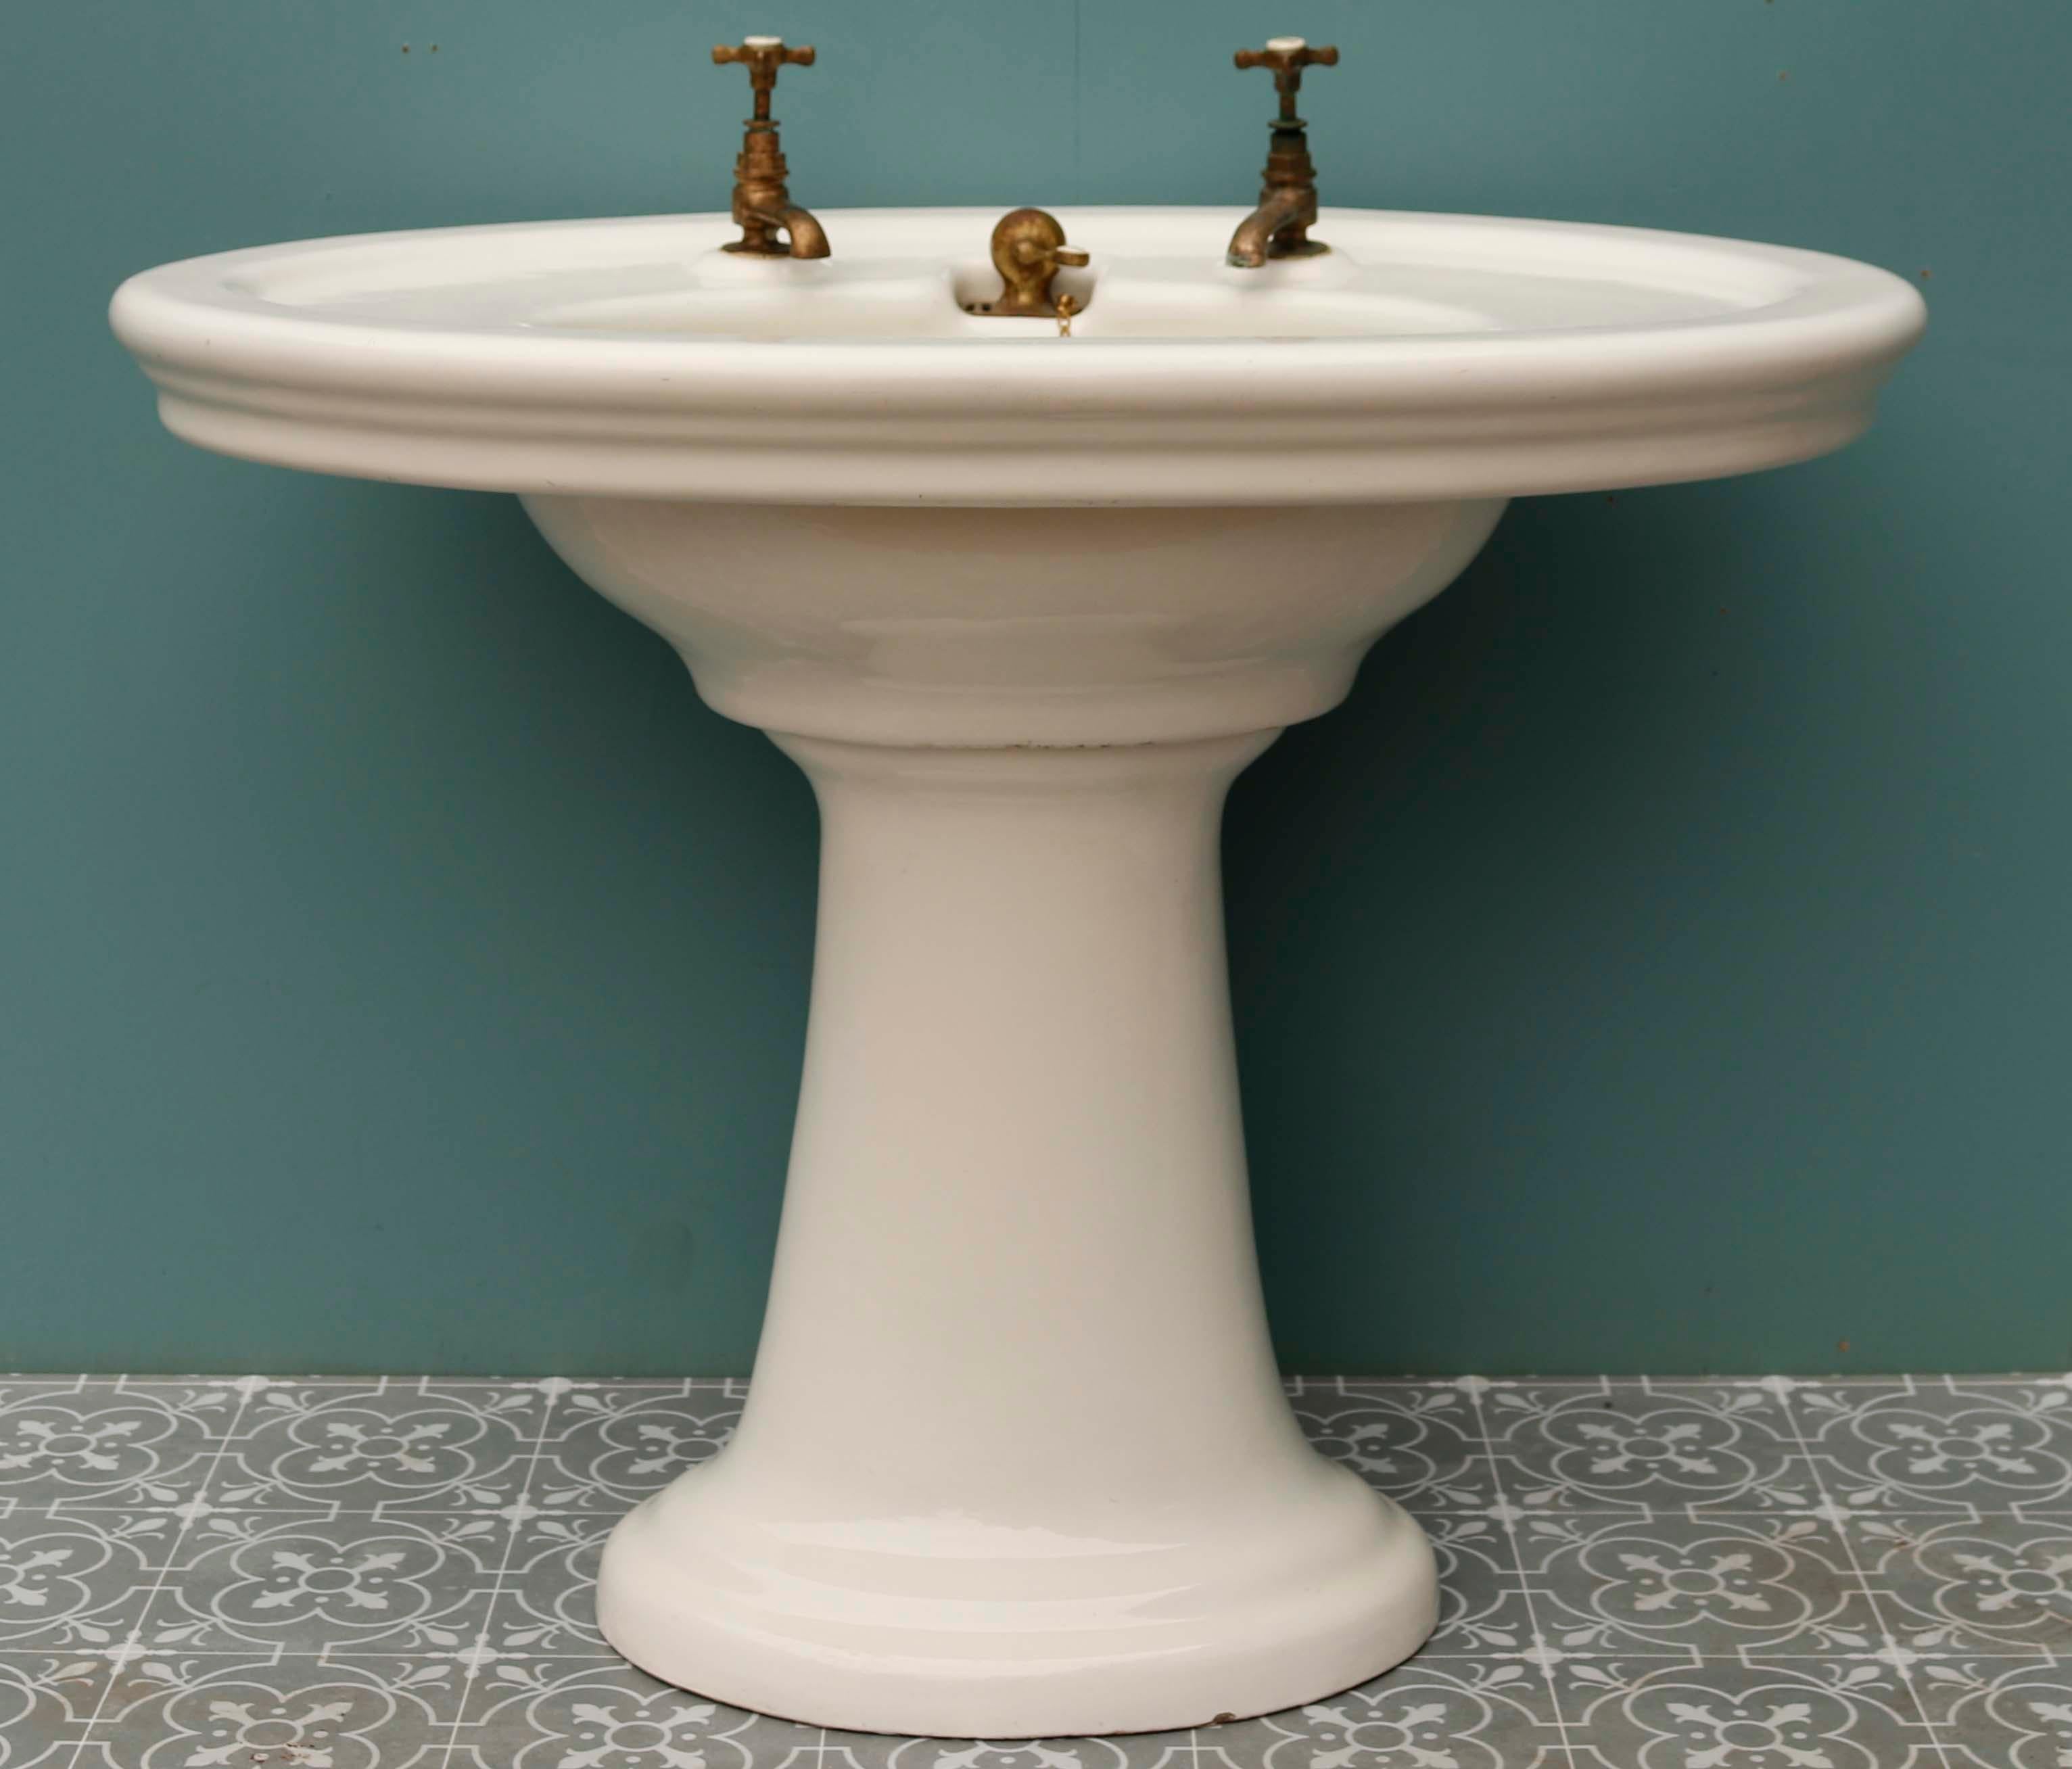 Antique Oval Shaped Pedestal Sink 2